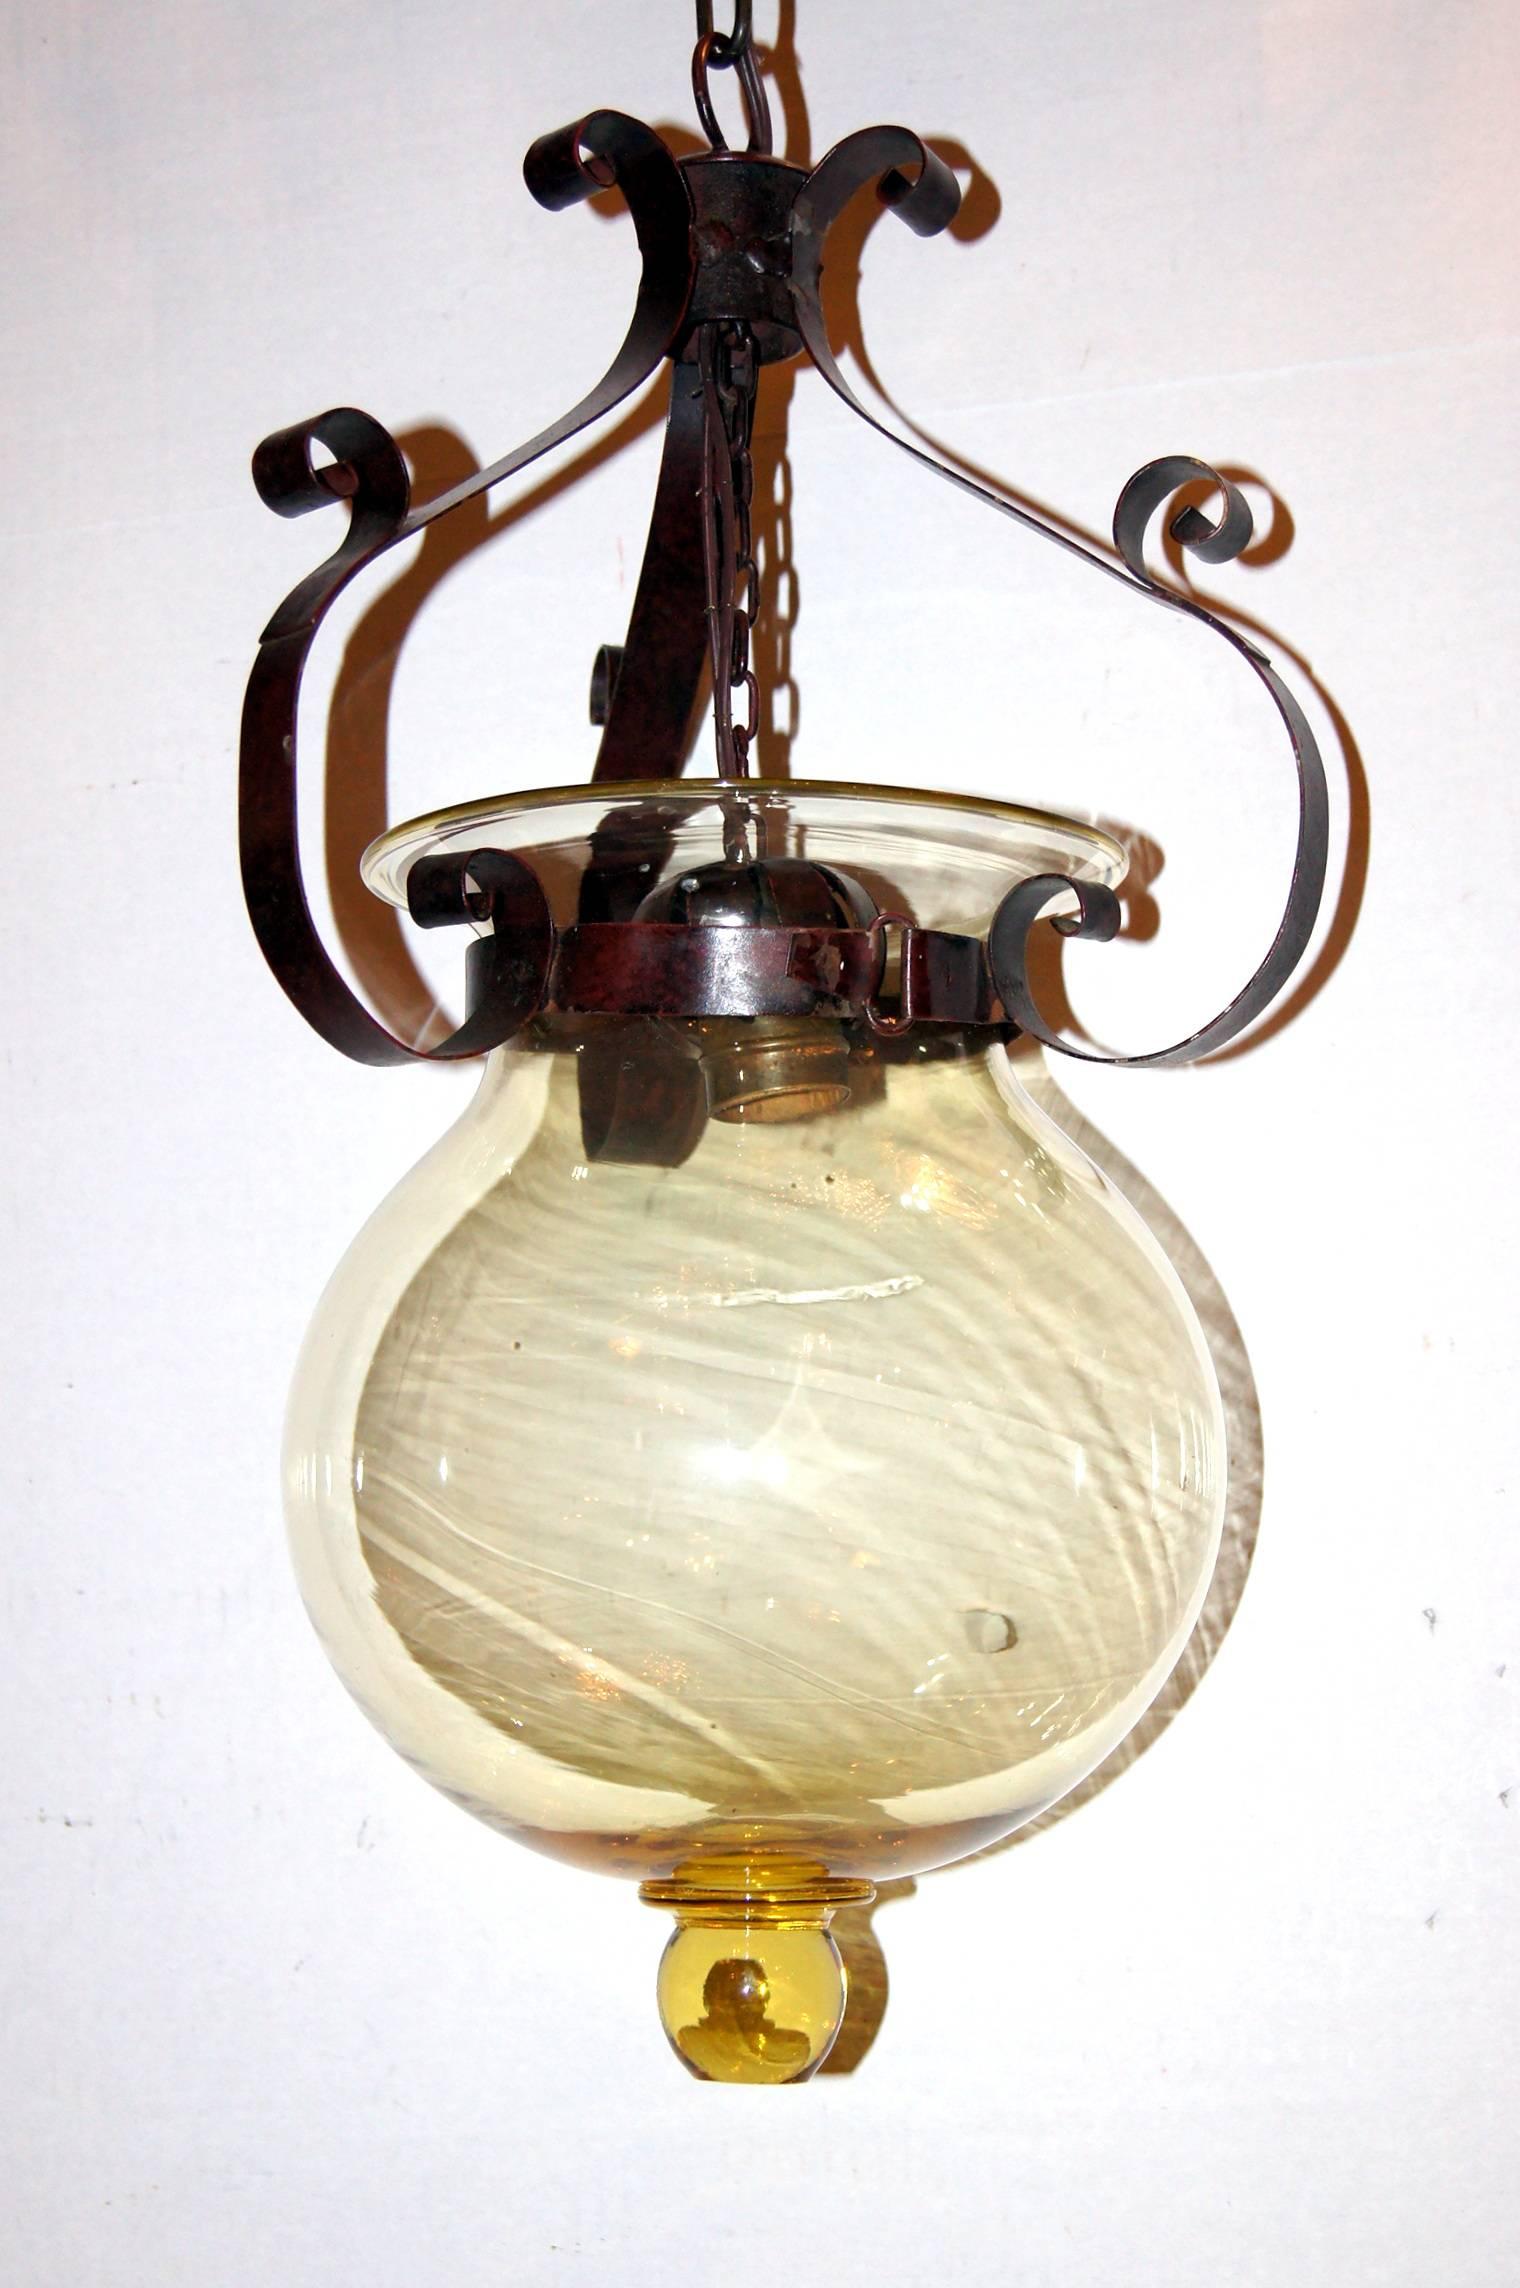 A circa 1920er Jahre  Venezianische Laterne aus geblasenem Glas mit gehämmertem Metallgehäuse.

Abmessungen:
Fallhöhe: 20″.
Durchmesser: 7,75″.